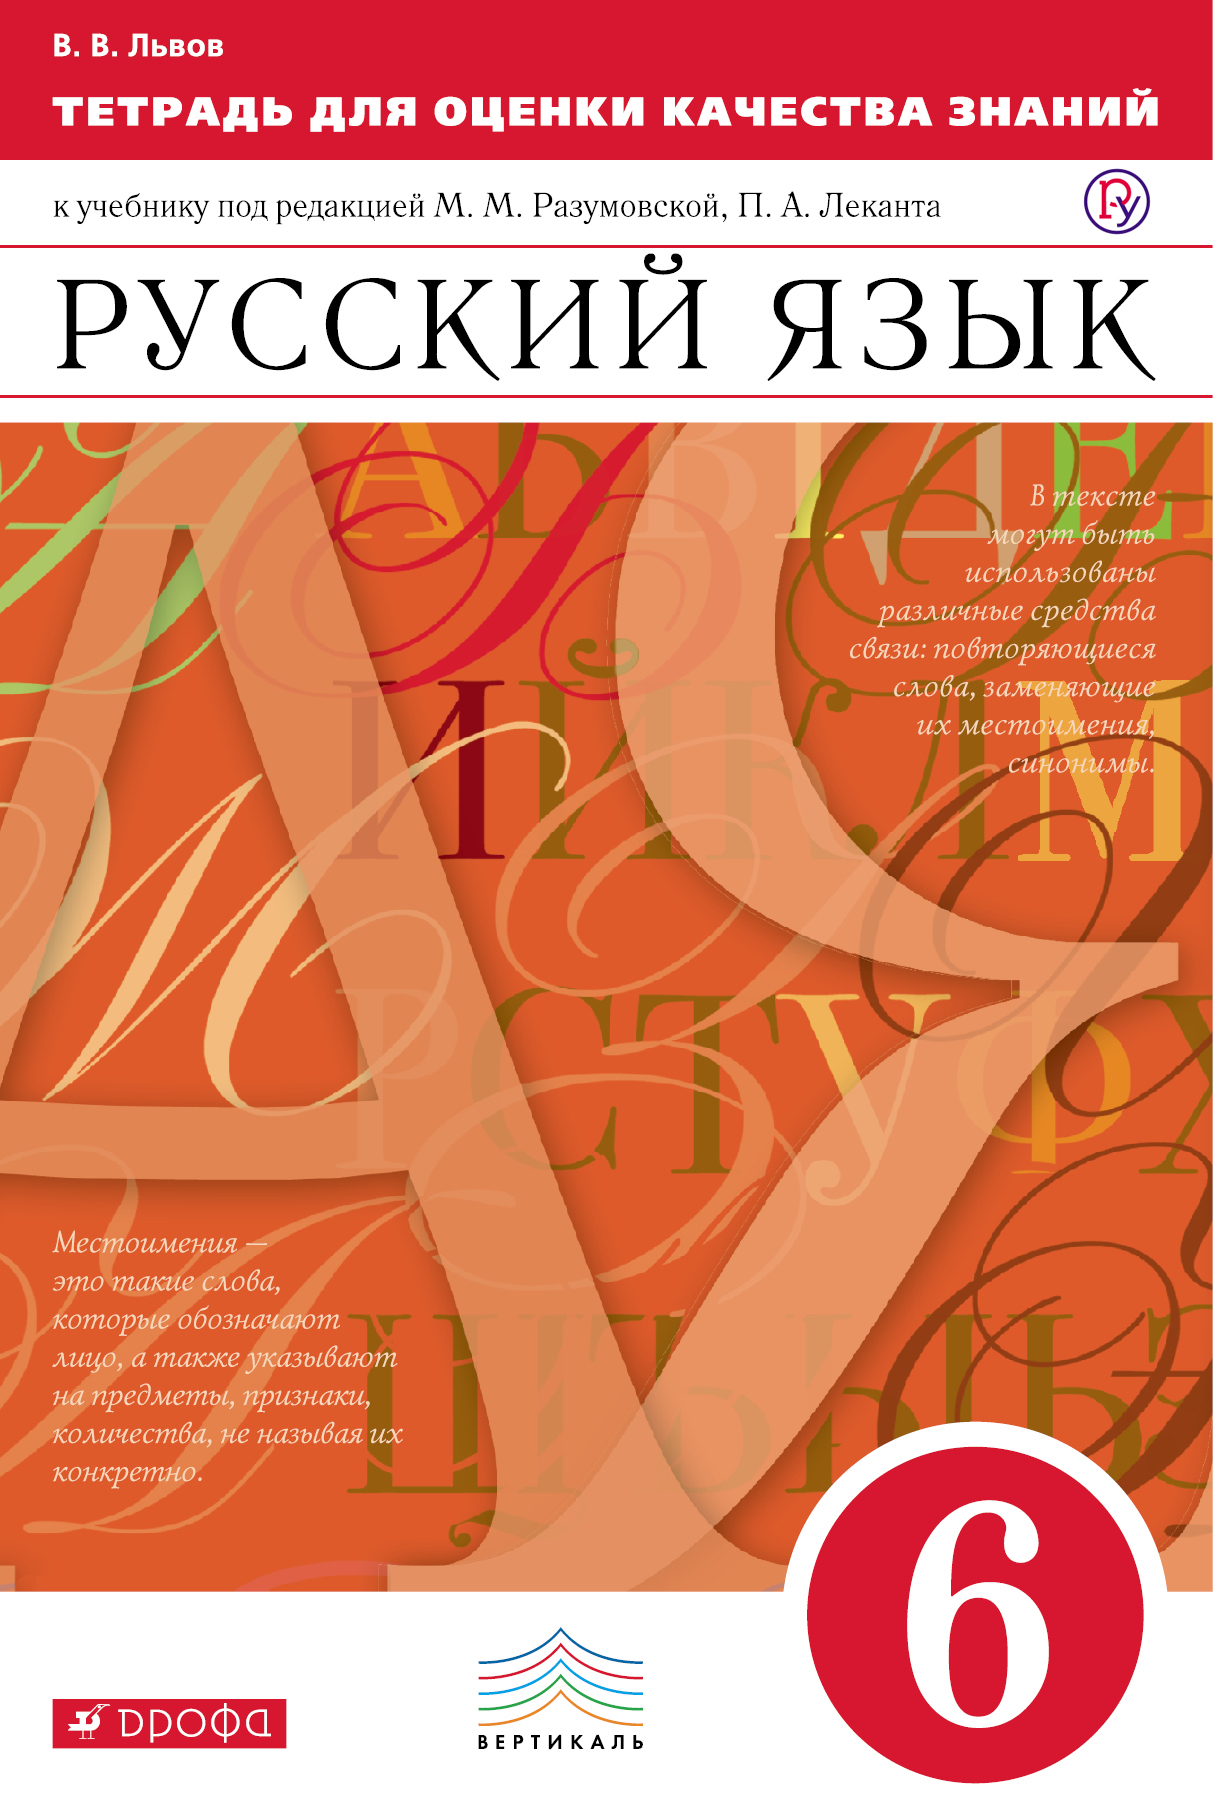 Скачать решебник по русскому языку 6 класс разумовская леканта в pdf